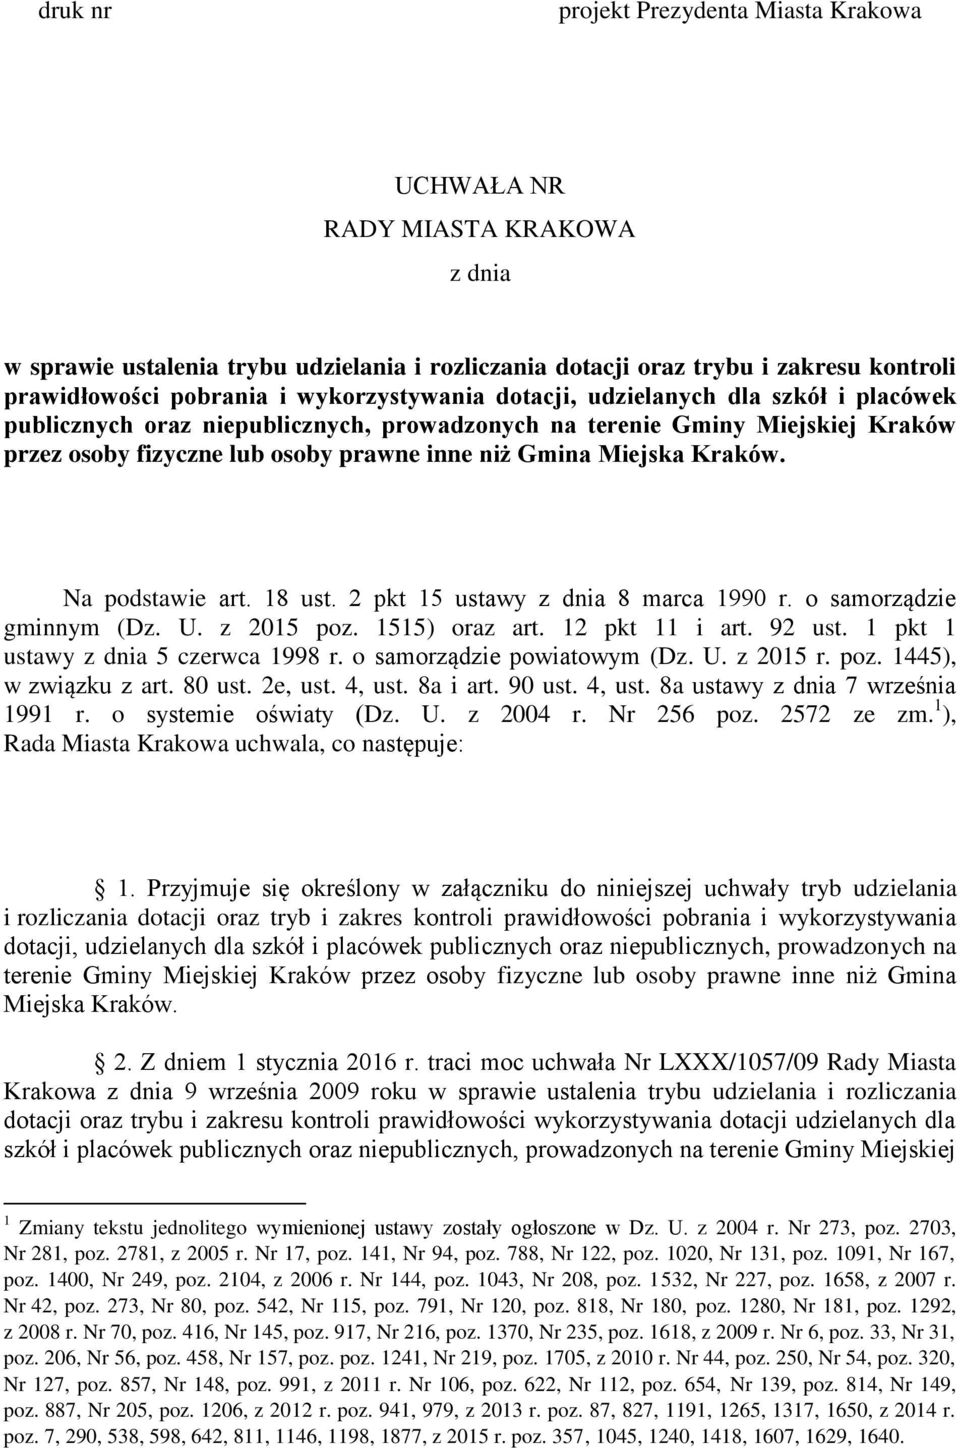 Kraków. Na podstawie art. 18 ust. 2 pkt 15 ustawy z dnia 8 marca 1990 r. o samorządzie gminnym (Dz. U. z 2015 poz. 1515) oraz art. 12 pkt 11 i art. 92 ust. 1 pkt 1 ustawy z dnia 5 czerwca 1998 r.